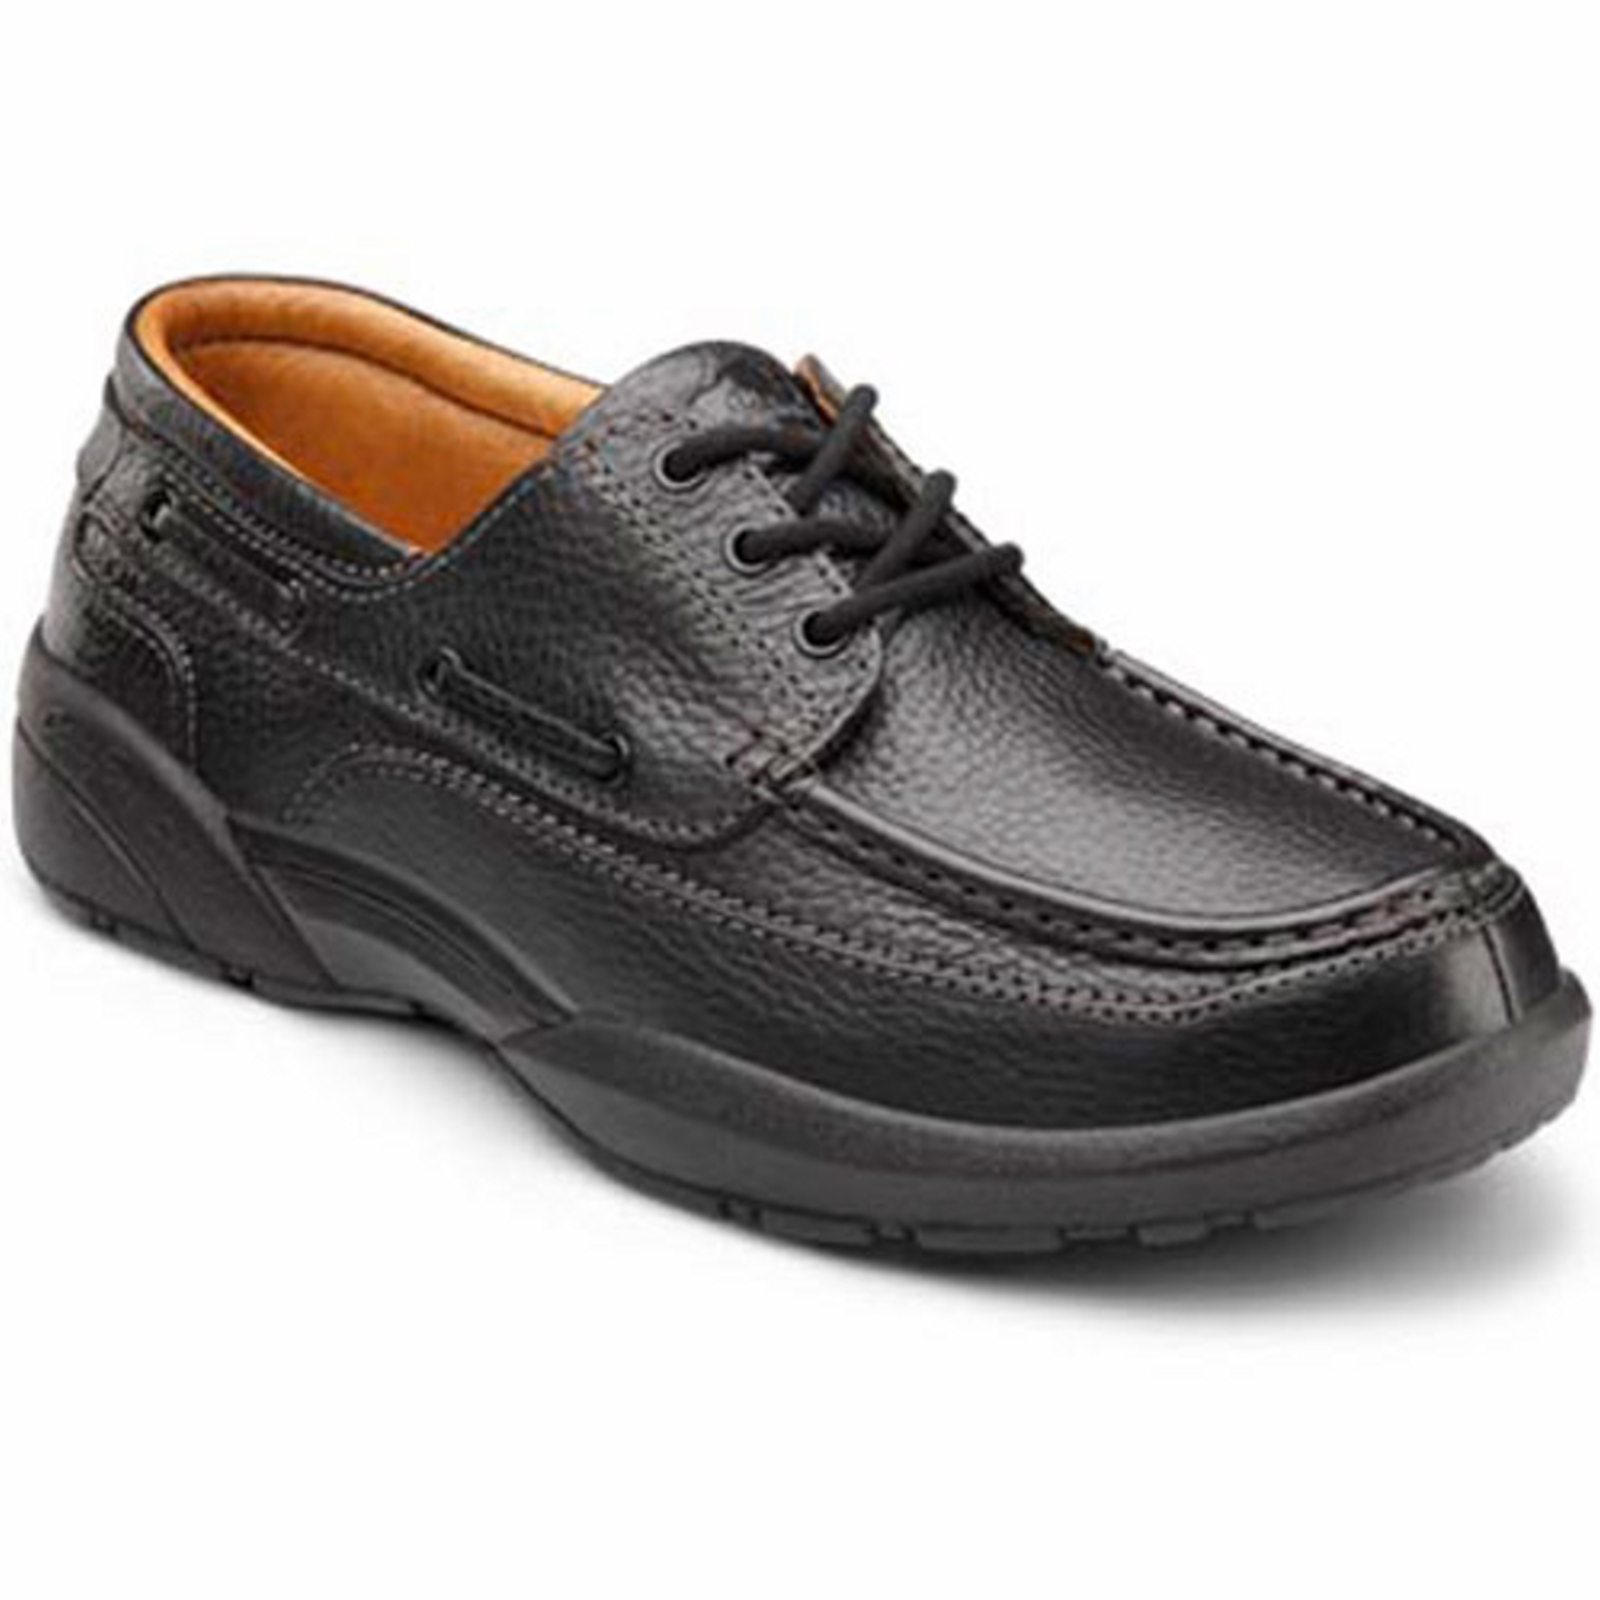 Dr. Comfort Patrick Men's Boat Shoe: 10 X-Wide (3E/4E) Black Lace - image 1 of 4